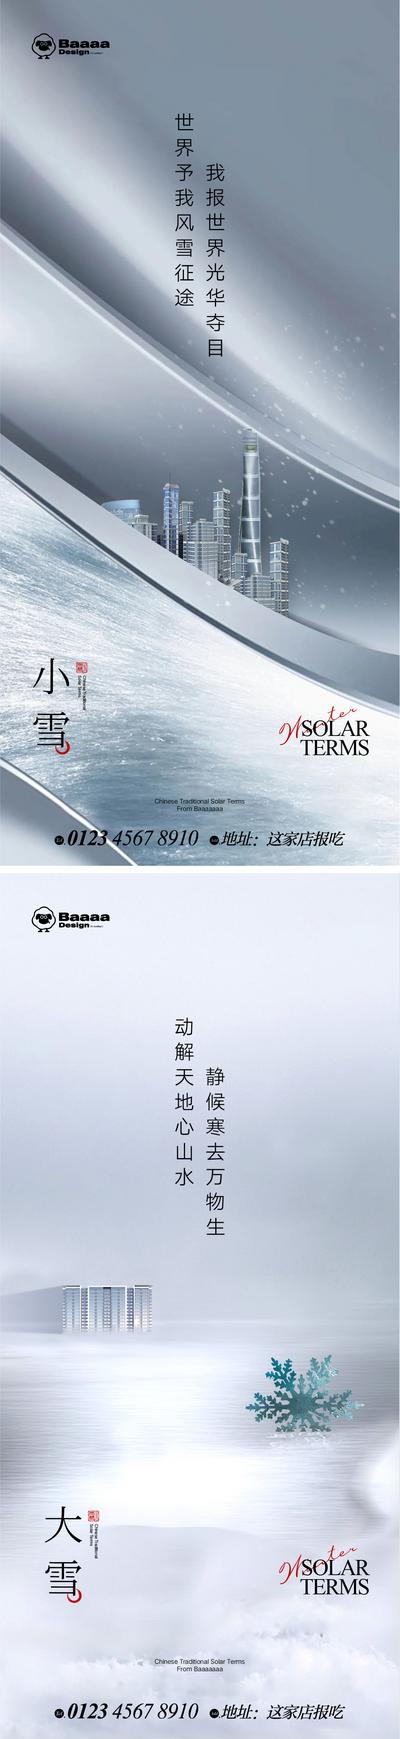 南门网 广告 海报 节气 系列 商业 小雪 大雪 肌理 大气 建筑 圈层 商圈 刷屏